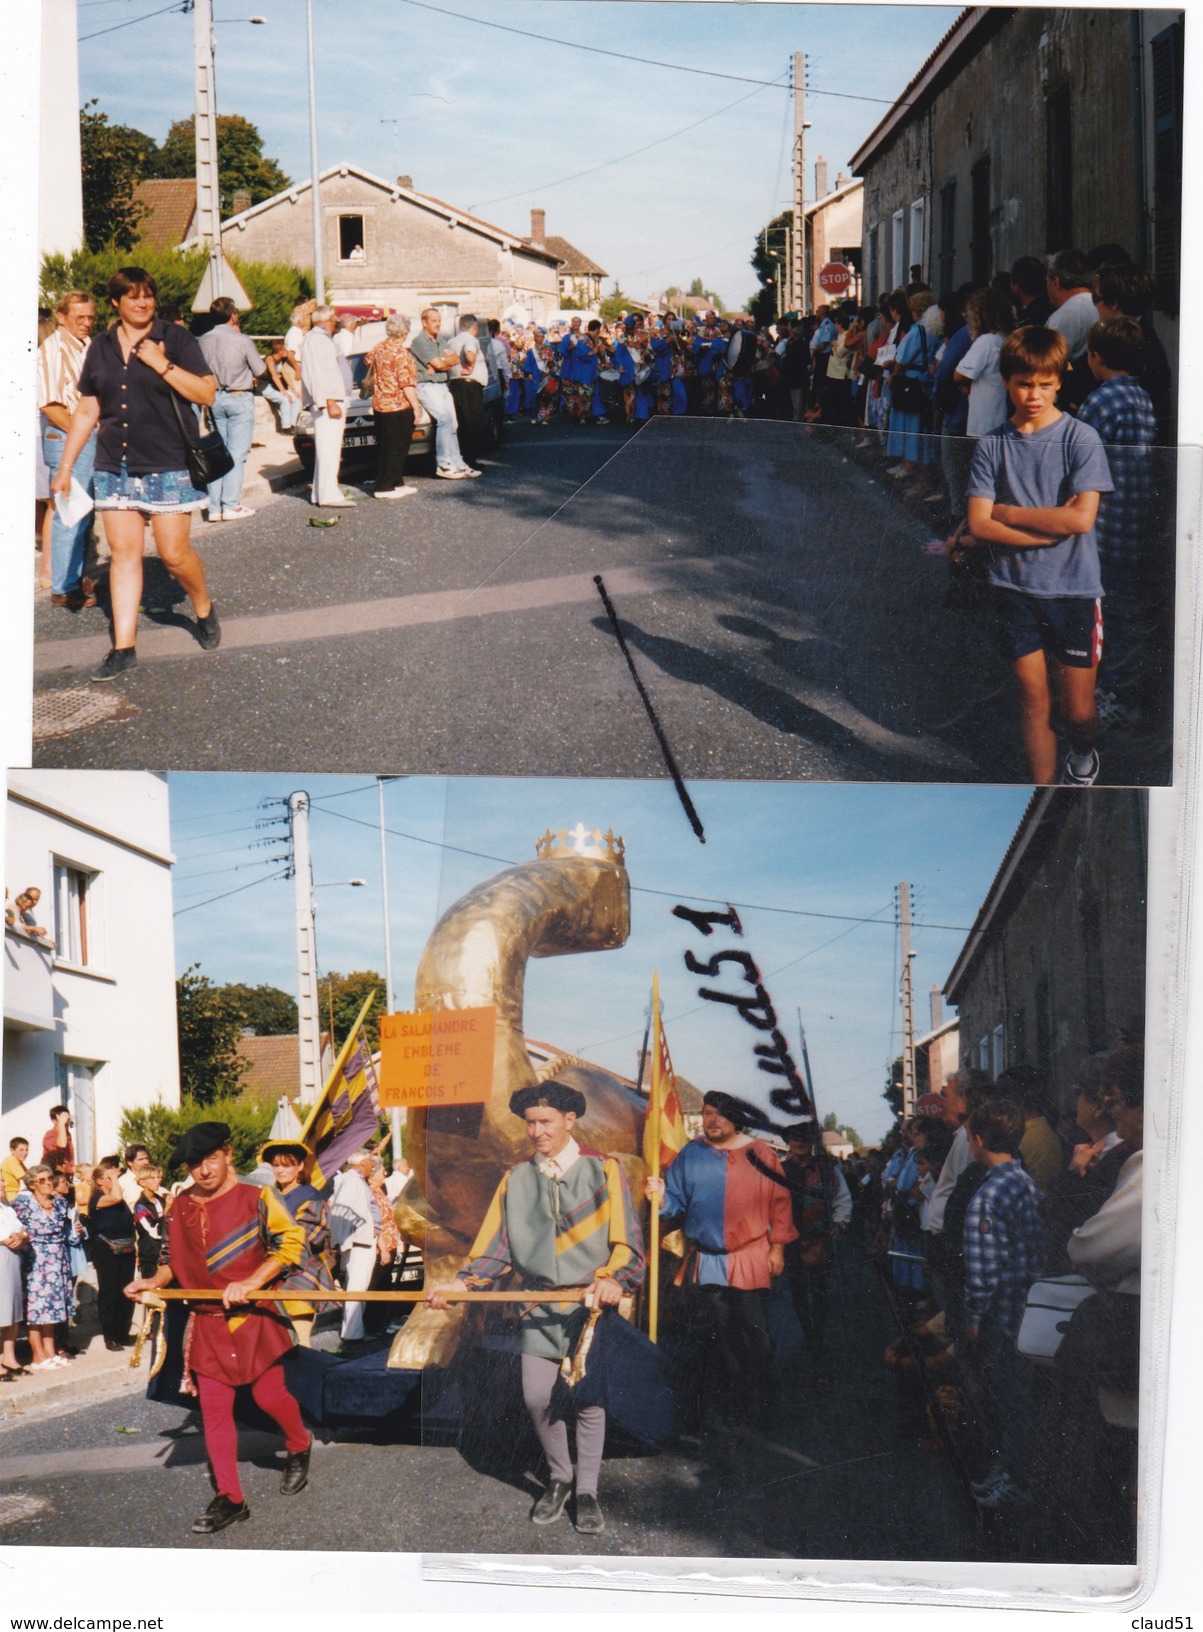 BRIENNE le CHATEAU (10) Lot de 22 photos d' une cavalcade -Monsieur le Maire en tête -Nombreux chars décorés